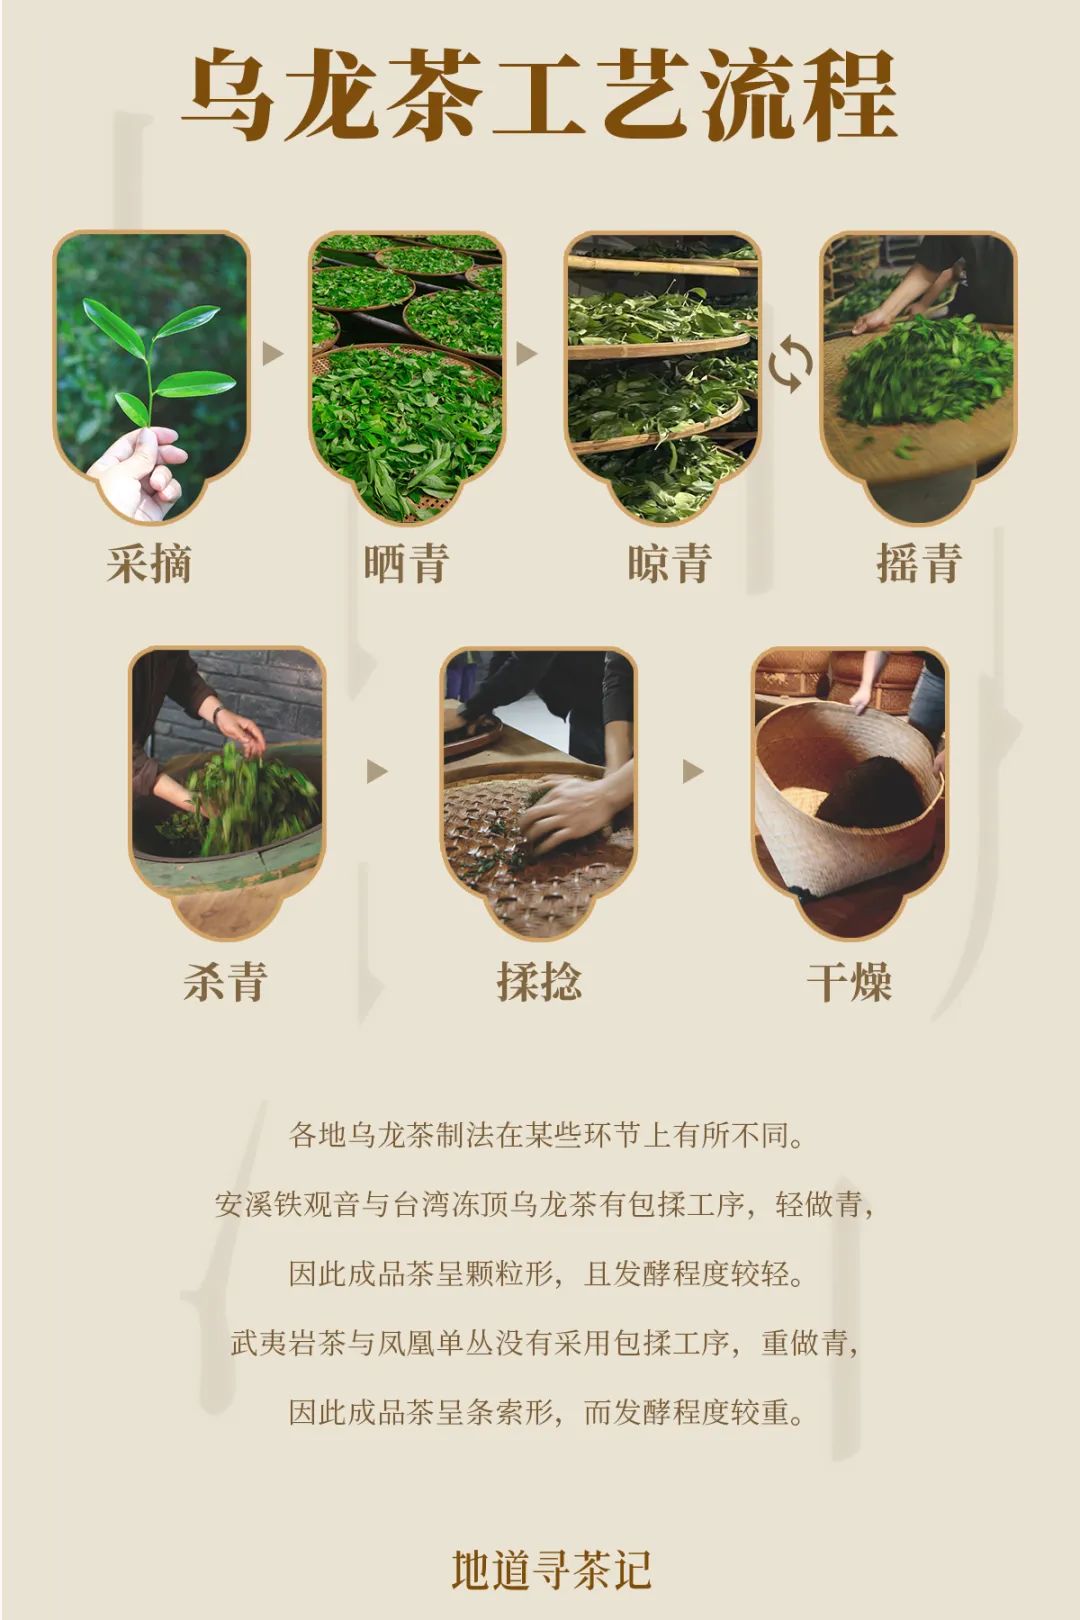 安化黑茶的制作工艺图片